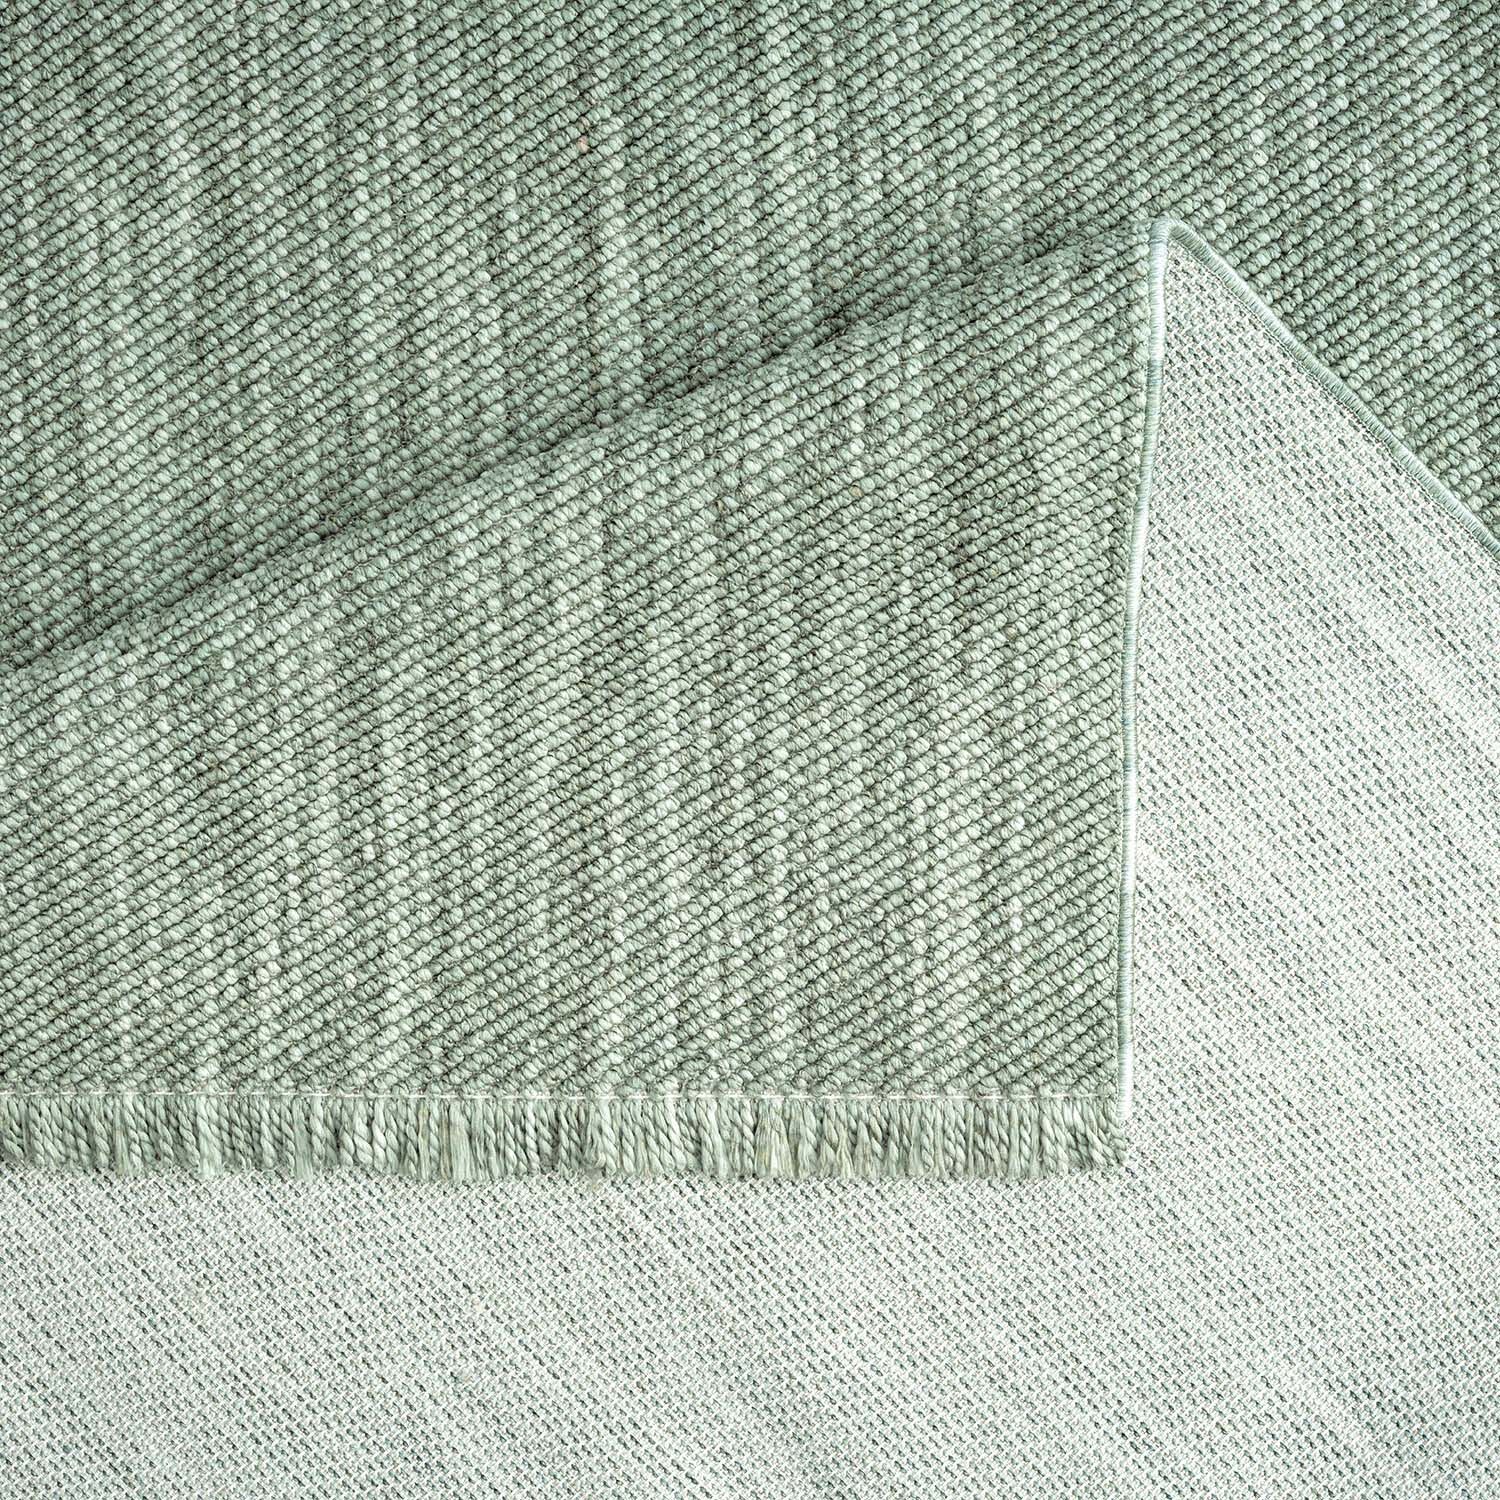 Teppich Wolle Optik Gruen 160x230 5